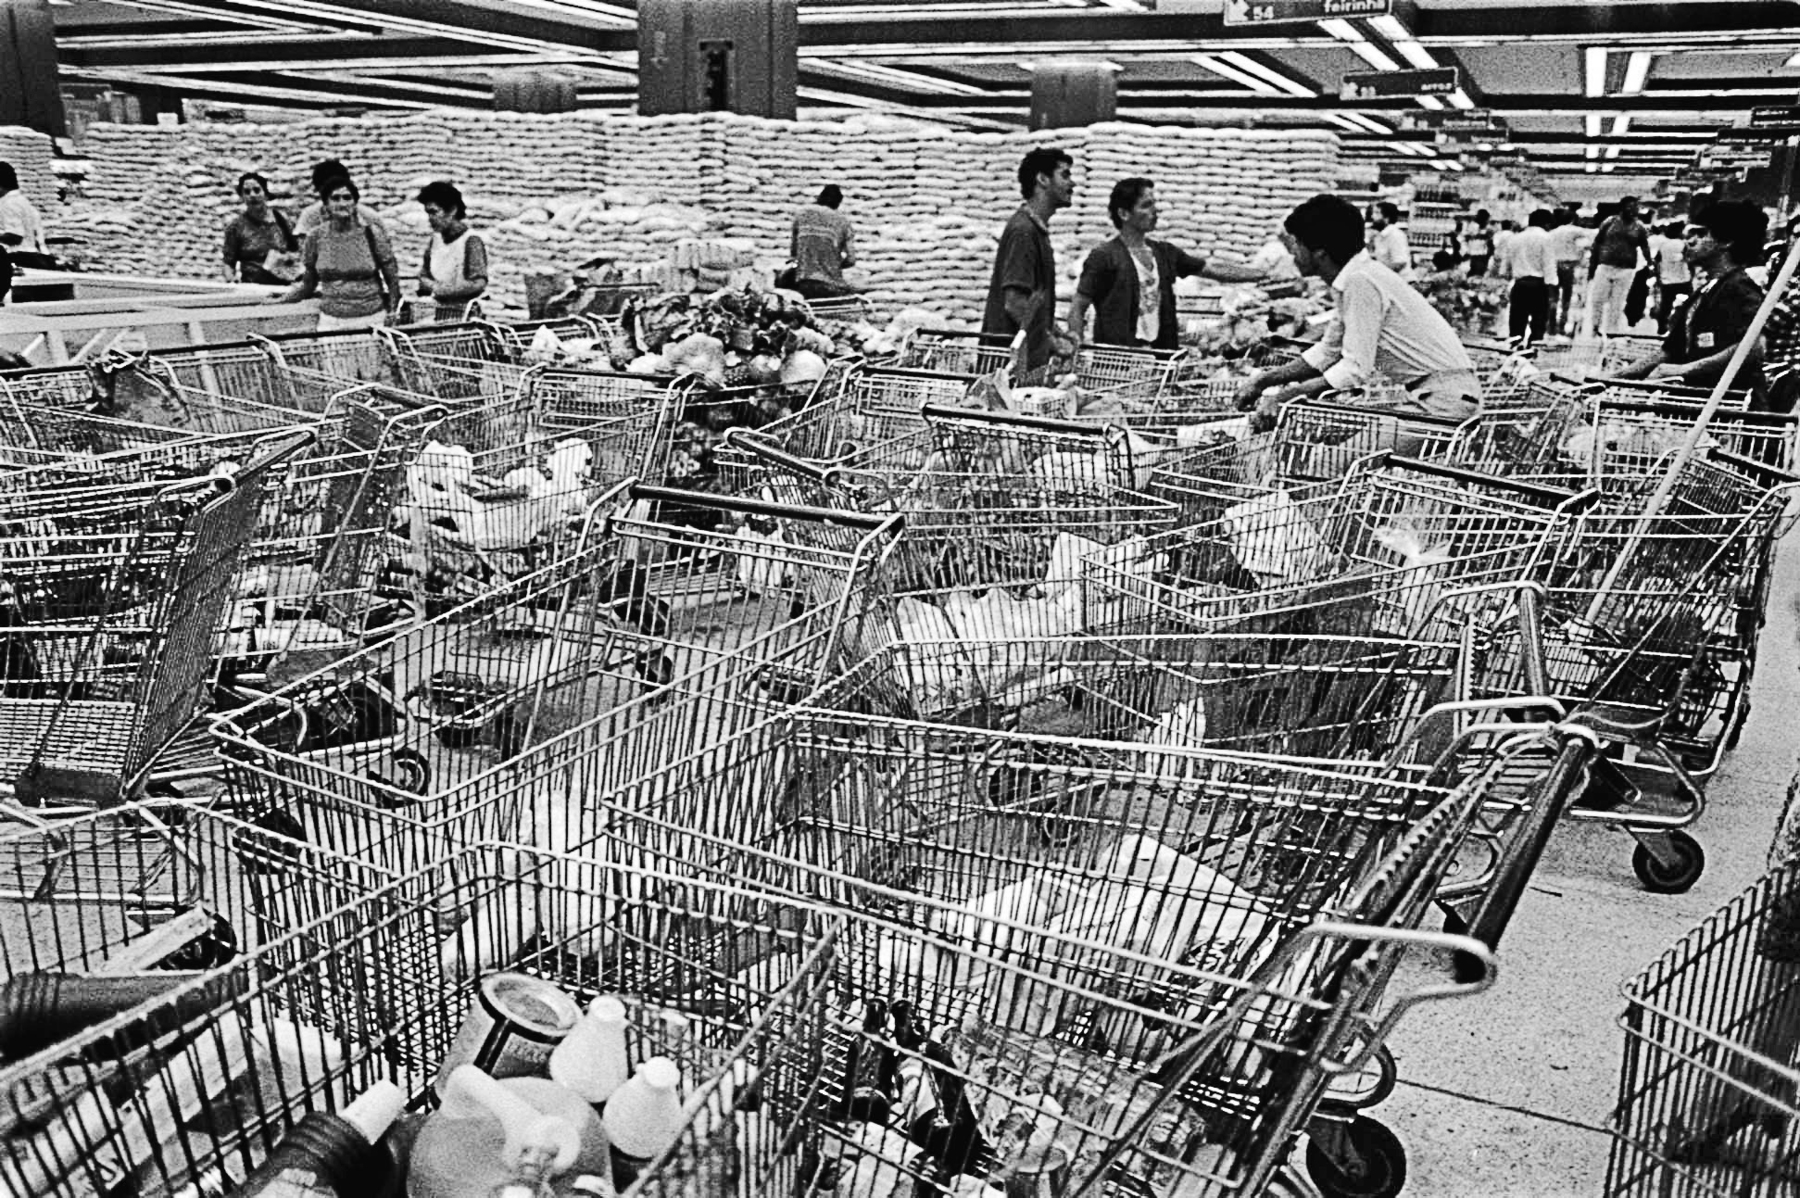 Fotografia em preto e branco. Várias pessoas dentro de um supermercado. À frente, carrinhos com compras aglomeradas.